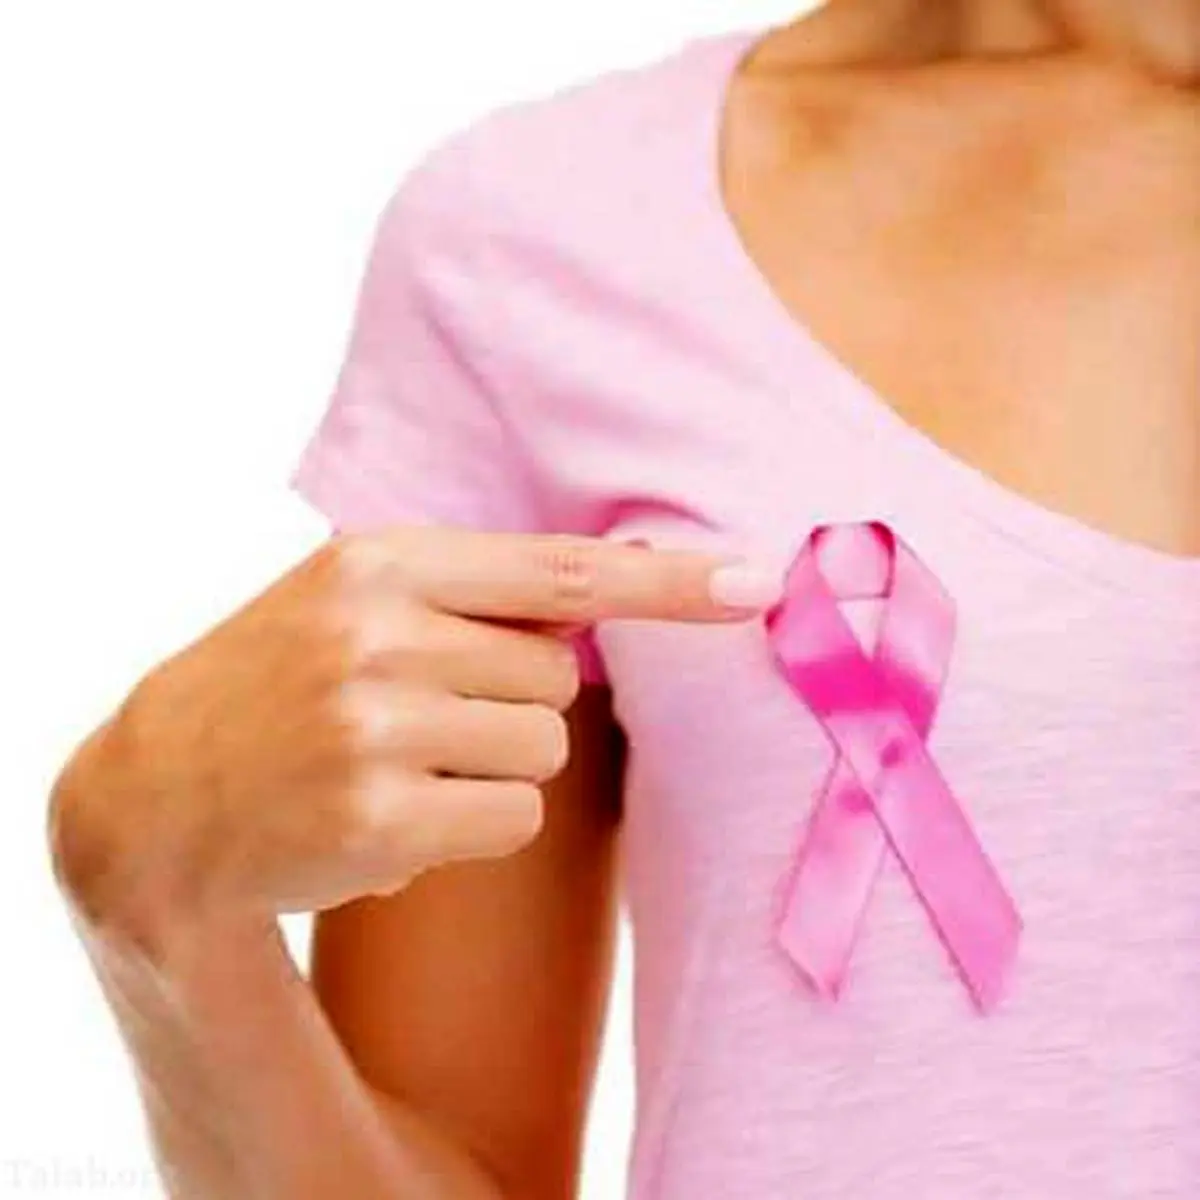 سرطان سینه در زنان چگونه بوجود می آید؟